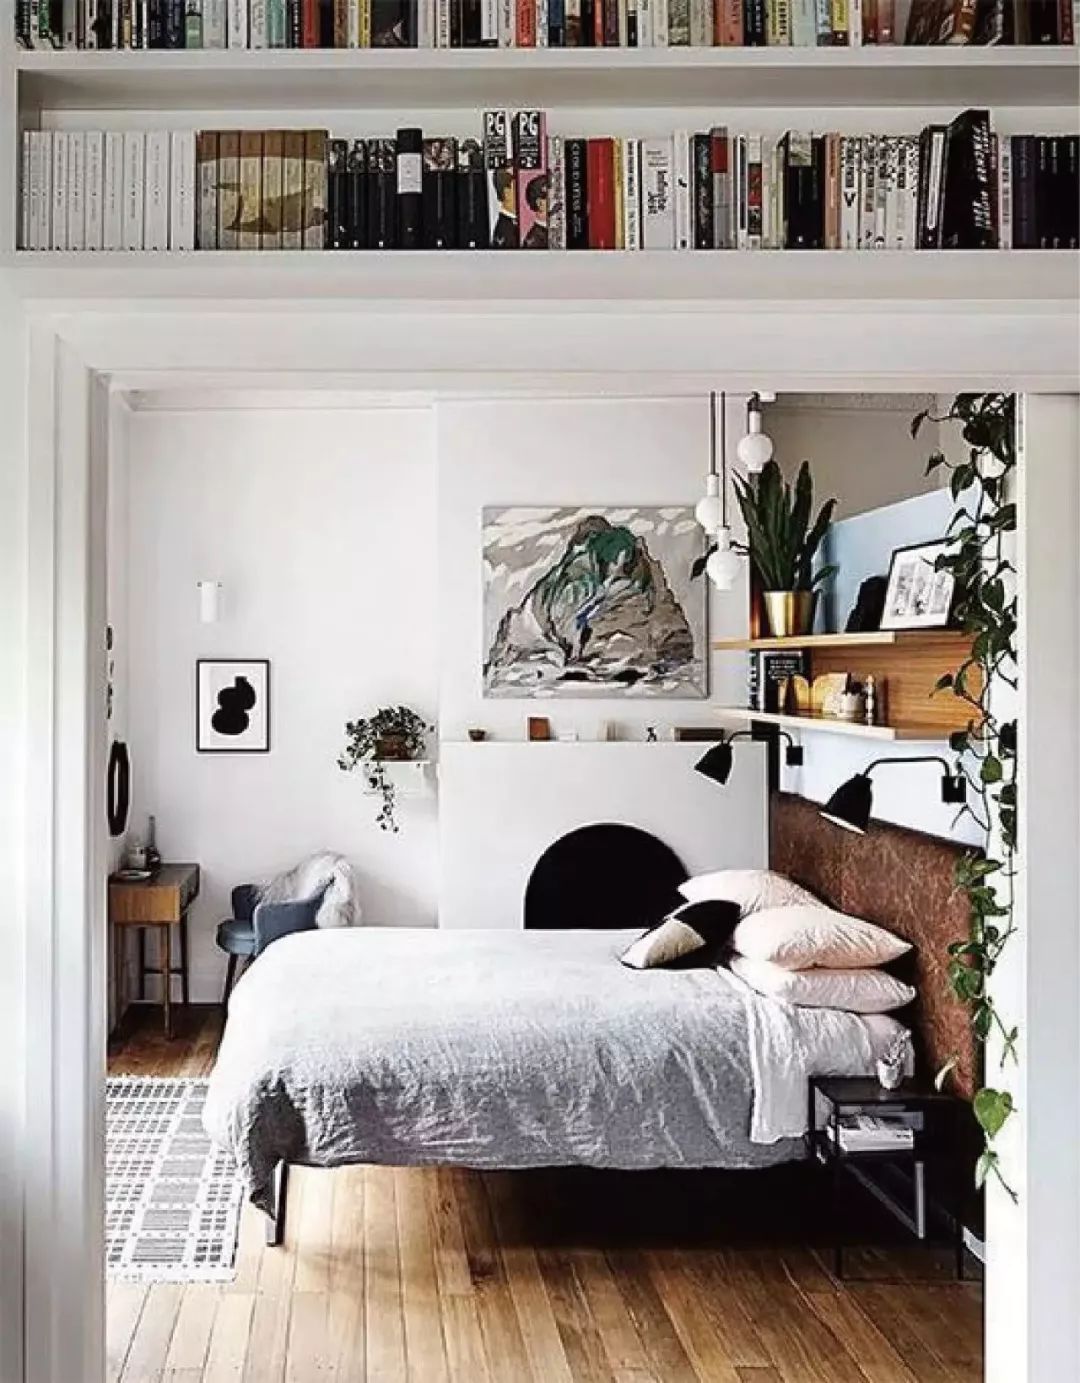 卧室书房一体化应该怎么设计 4种方案分享给你